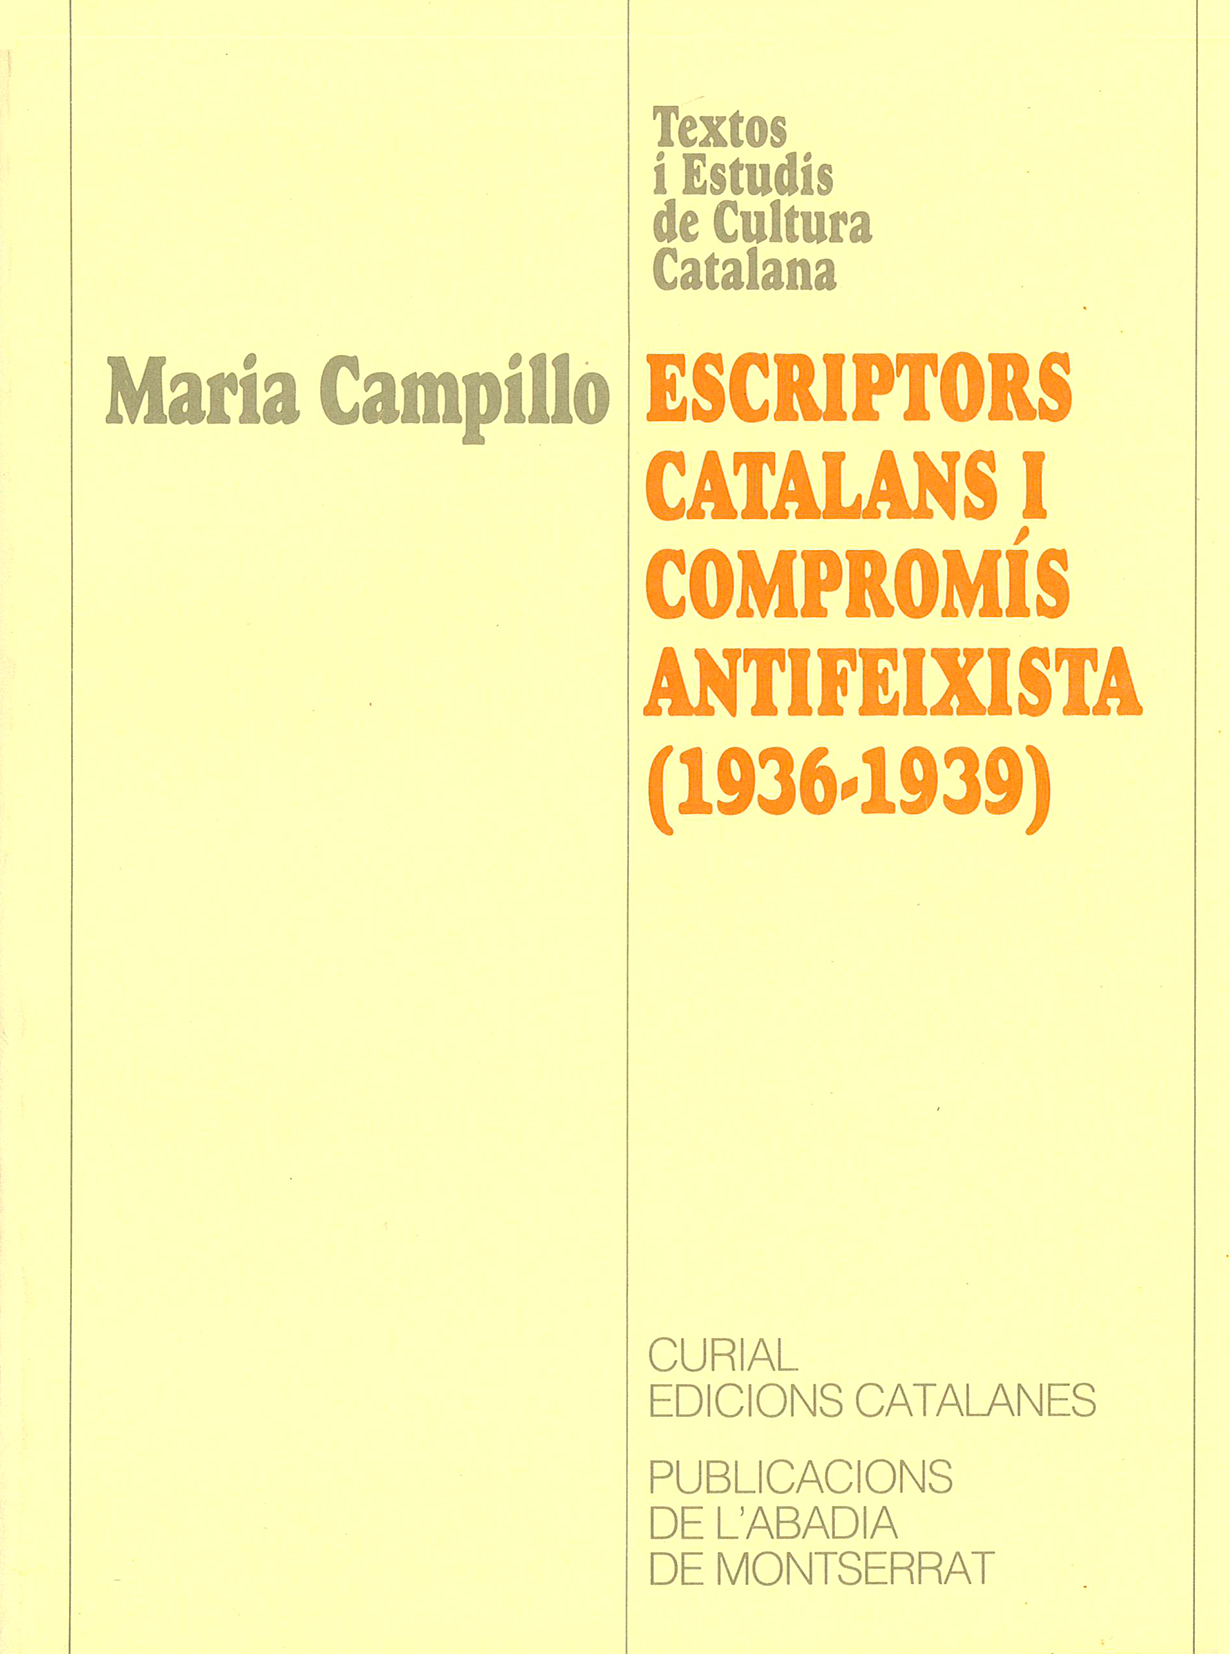 Imagen de portada del libro Escriptors catalans i compromís antifeixista (1936-1939)